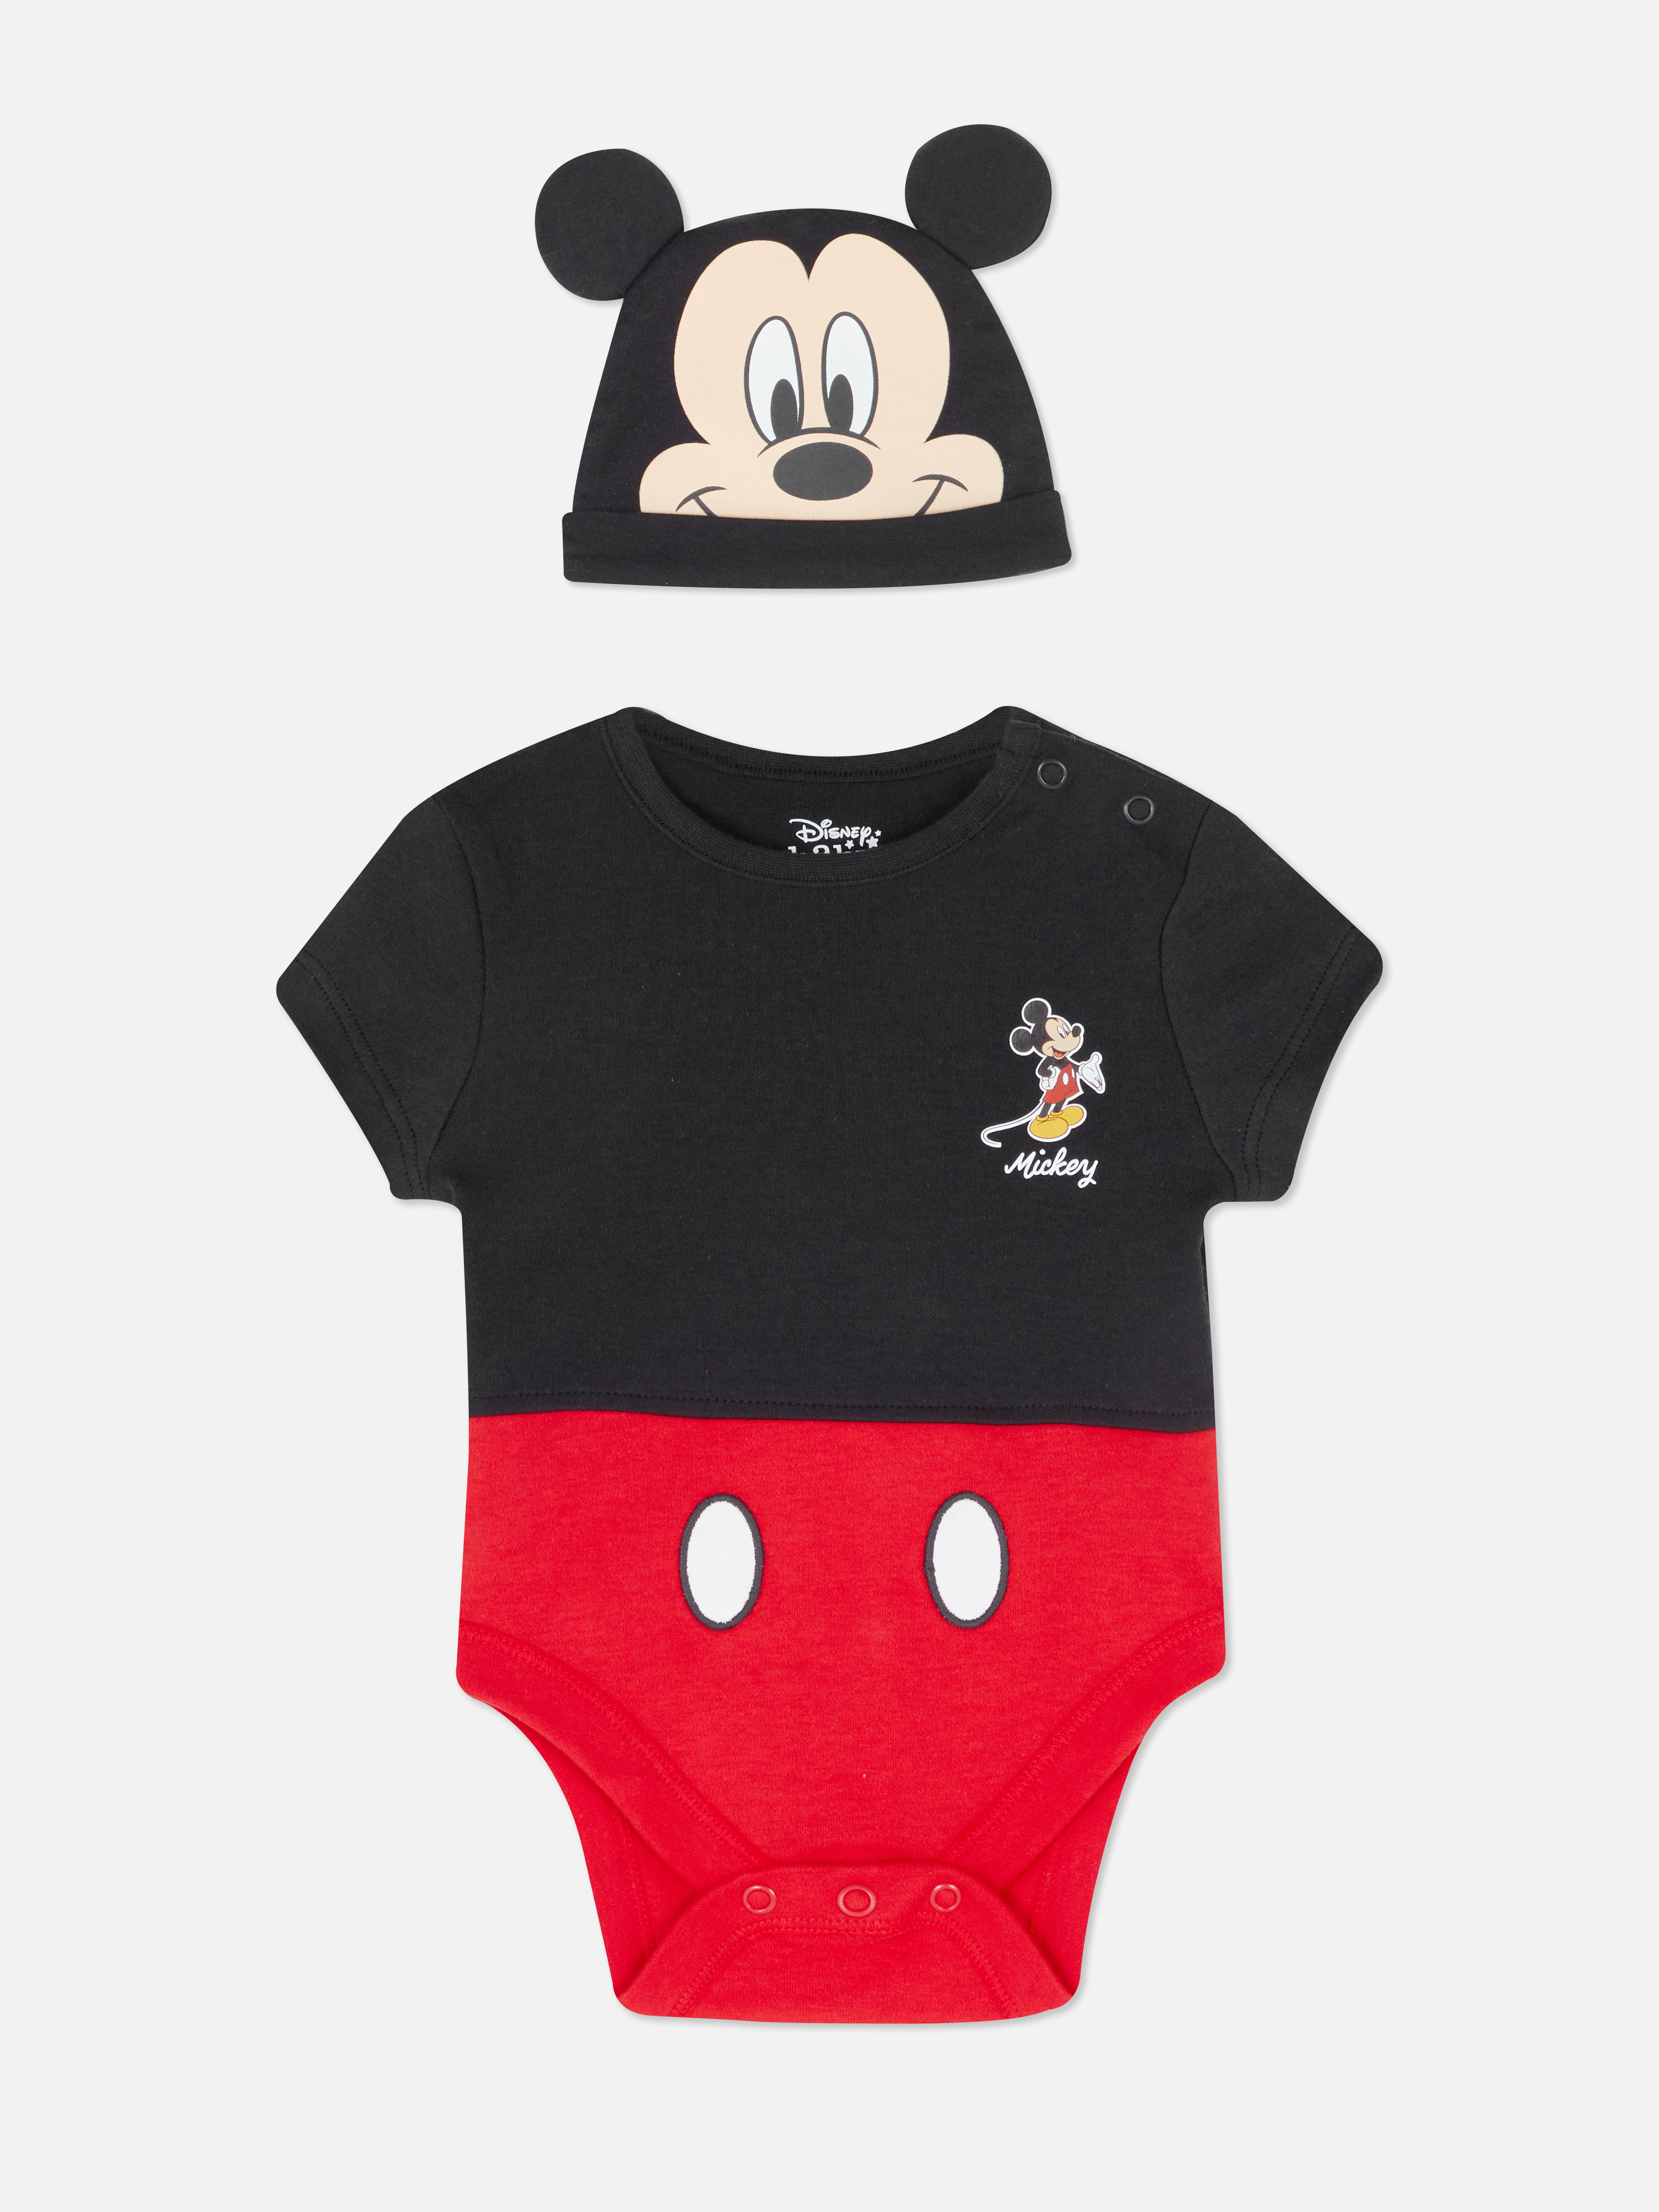 Disney's Mickey Mouse Dress Up Set